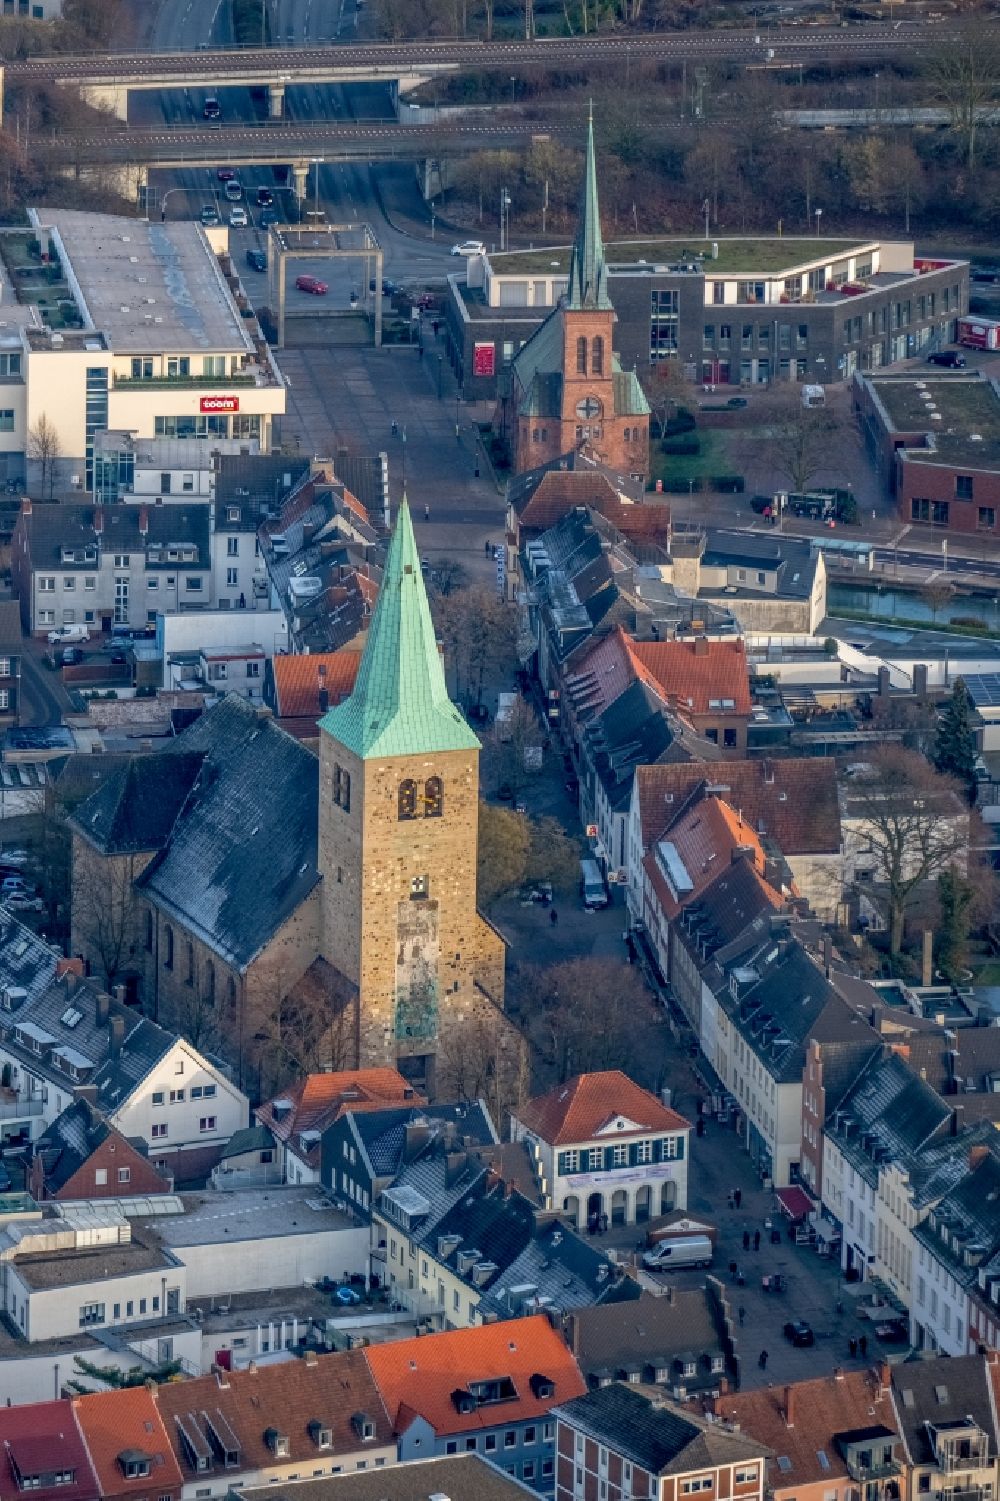 Dorsten aus der Vogelperspektive: Kirchengebäude der St. Agatha am Markt in Dorsten im Bundesland Nordrhein-Westfalen, Deutschland